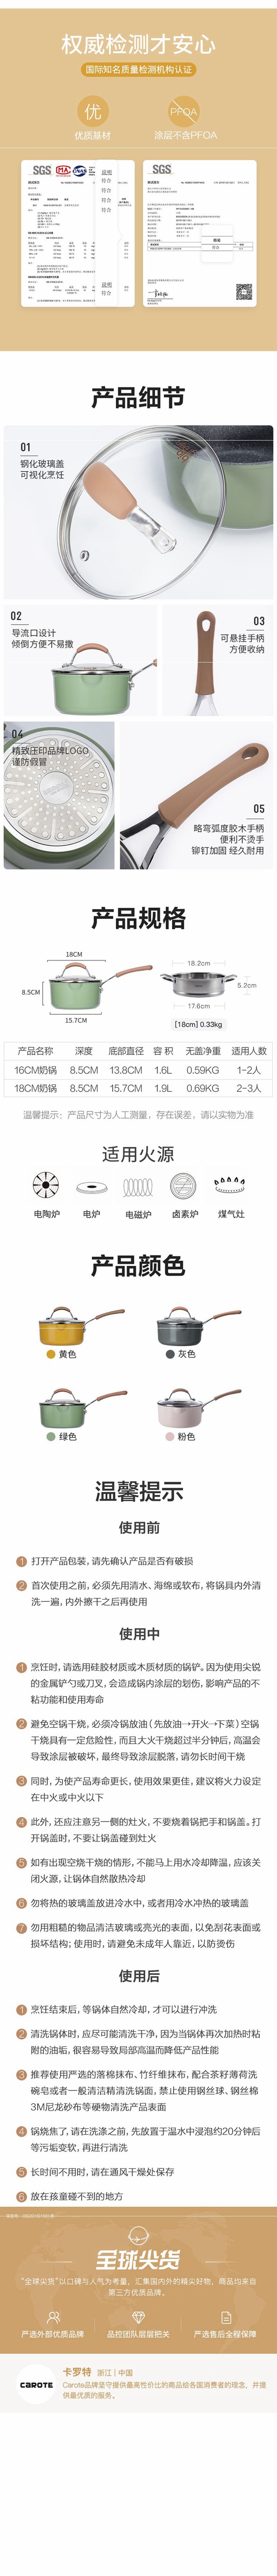 网易严选多色可选多功能锅 一锅多用轻松烹饪 奶锅 (灰色)18cm